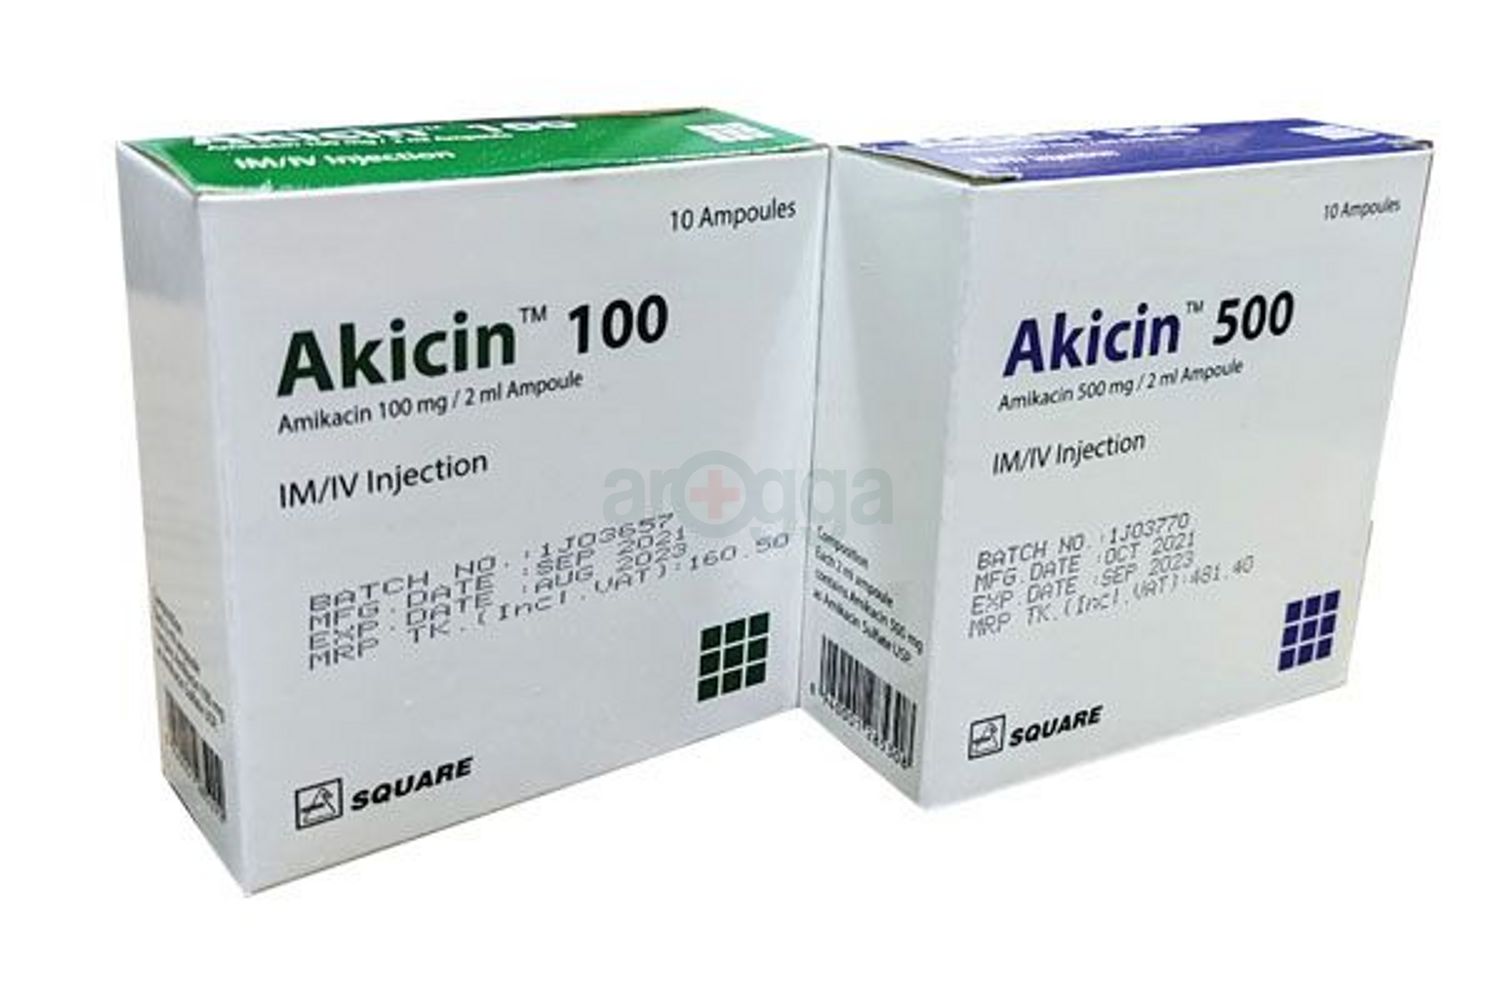 Akicin 500